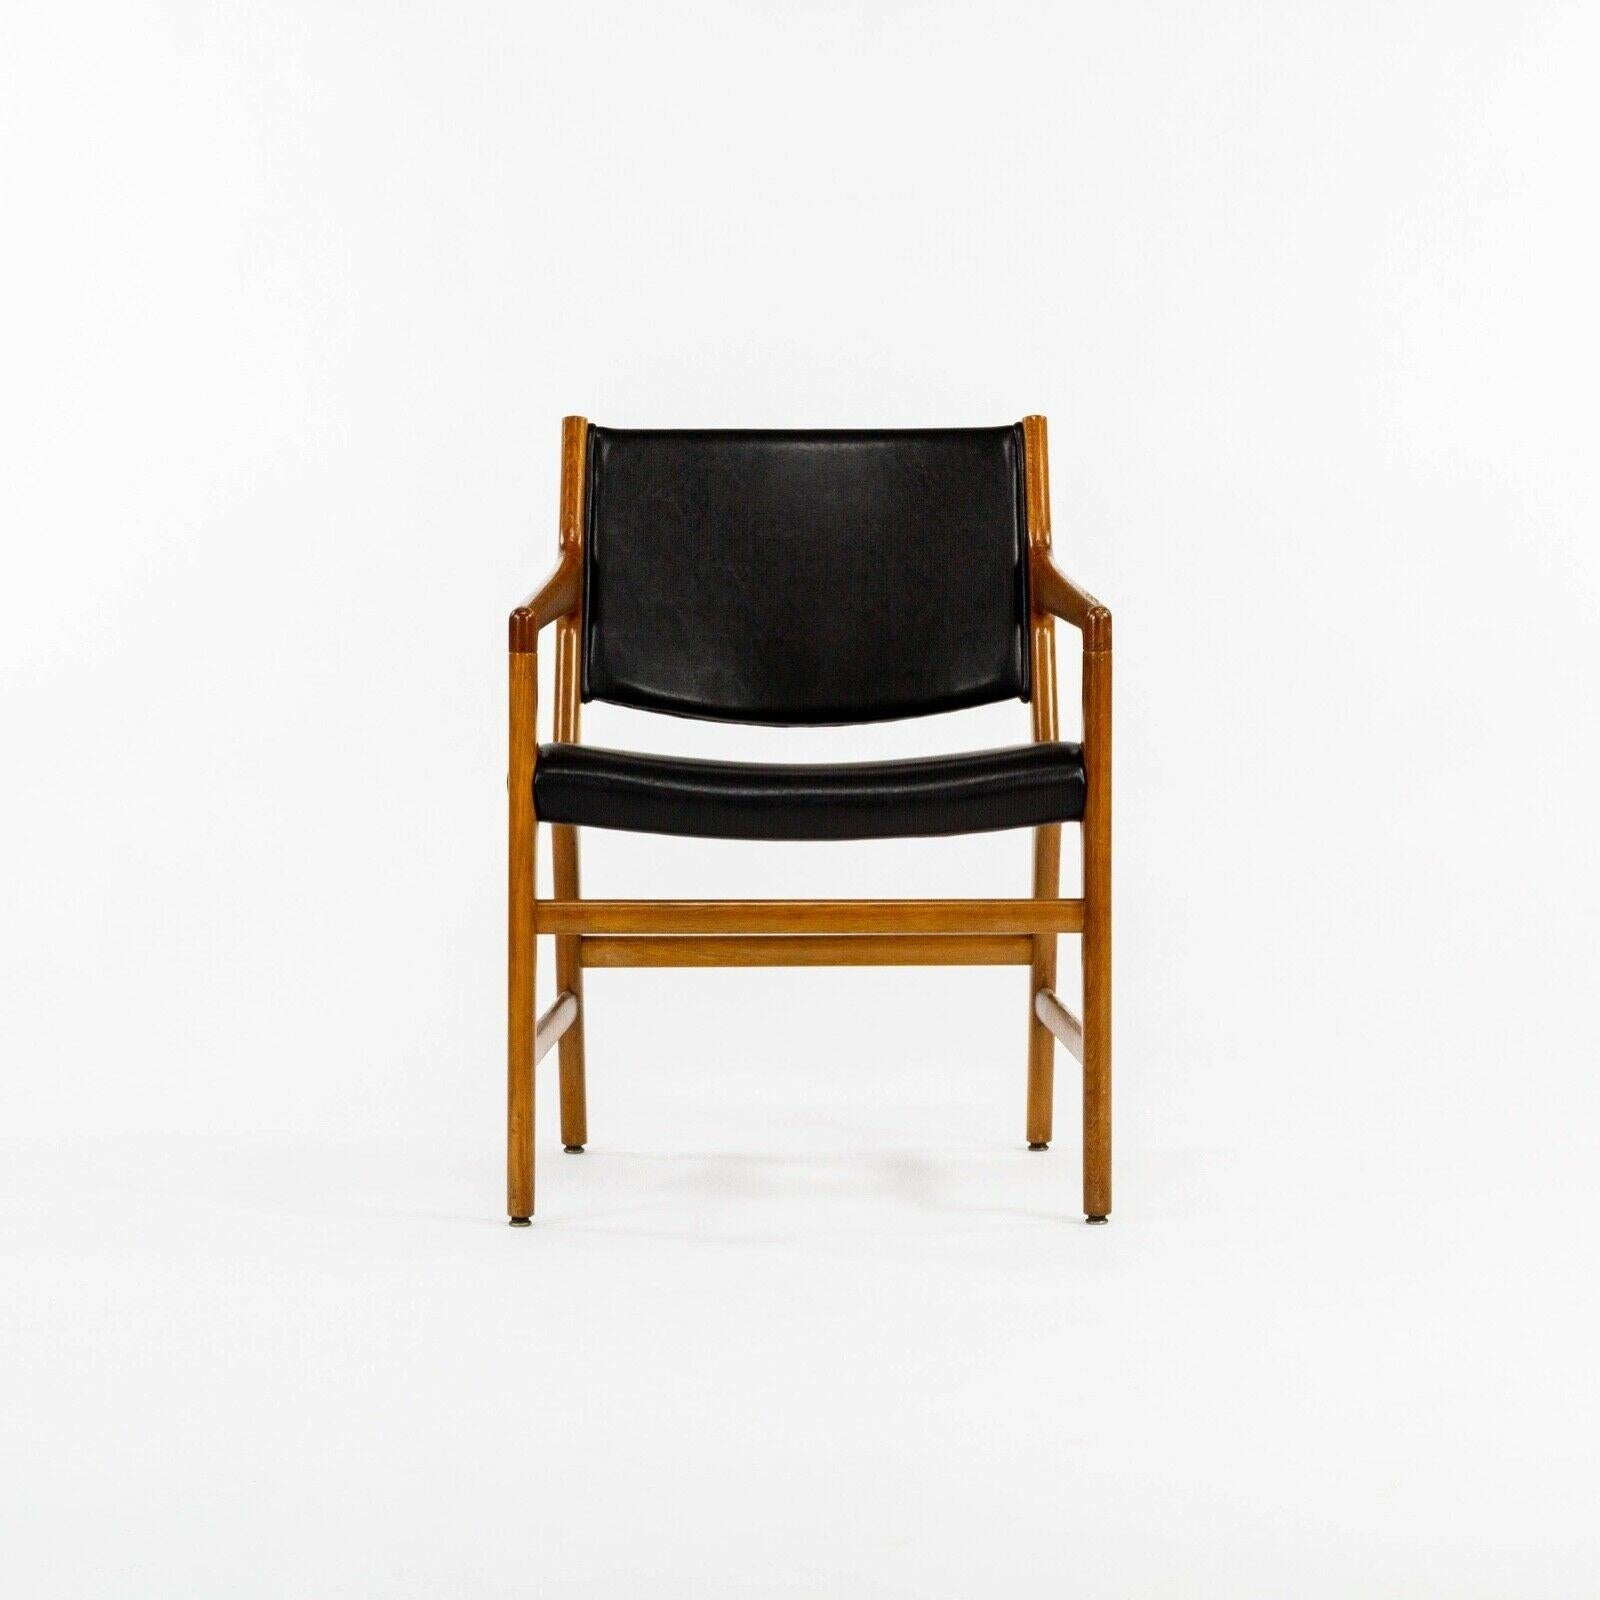 Il s'agit d'une chaise de salle à manger JH 507 avec accoudoirs, conçue par Hans Wegner et fabriquée par Johannes Hansen (plusieurs chaises sont disponibles, mais le prix indiqué est celui de chaque chaise). Ce groupe de chaises provient de